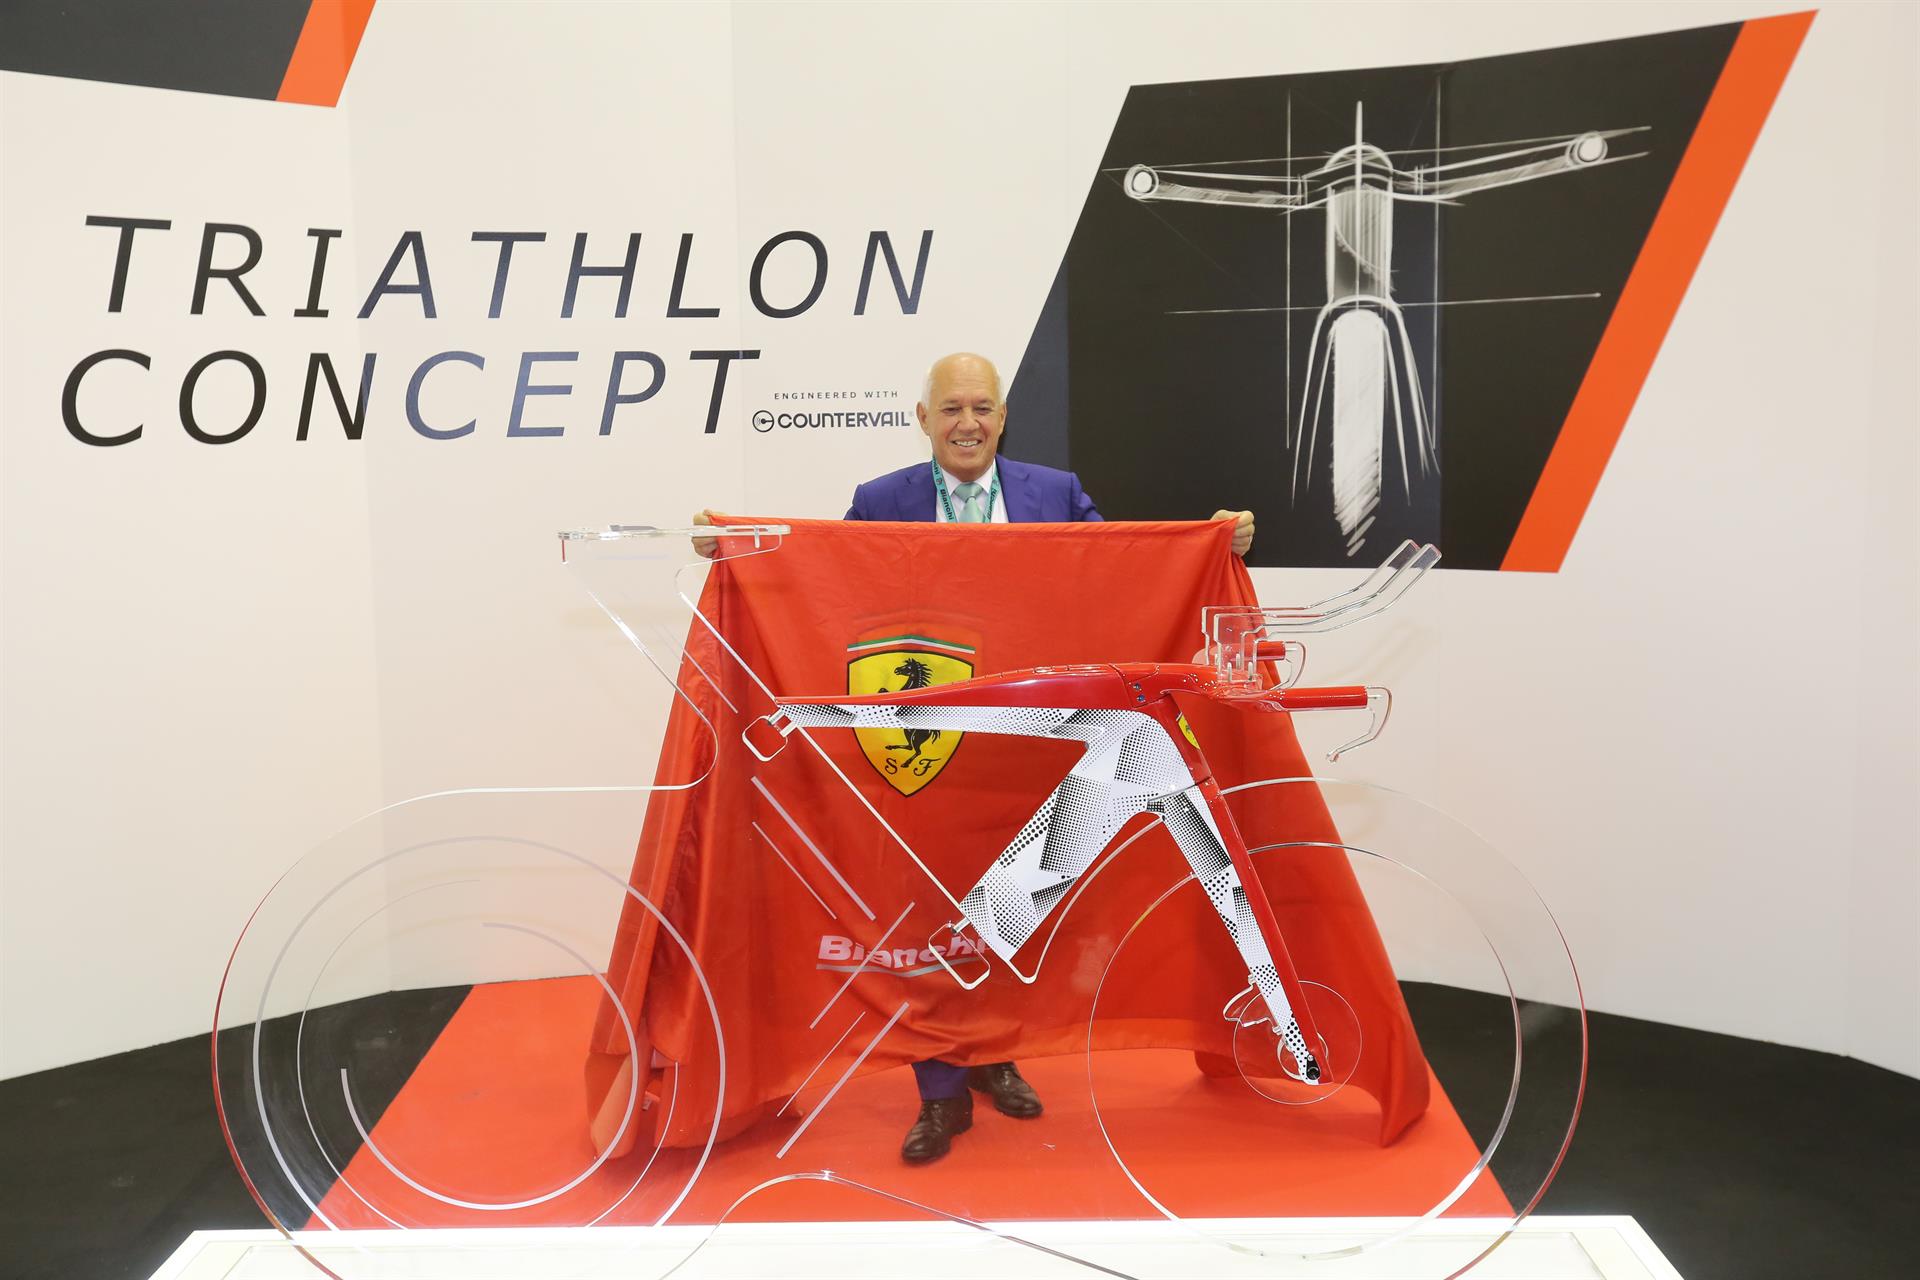 Triathlon Concept